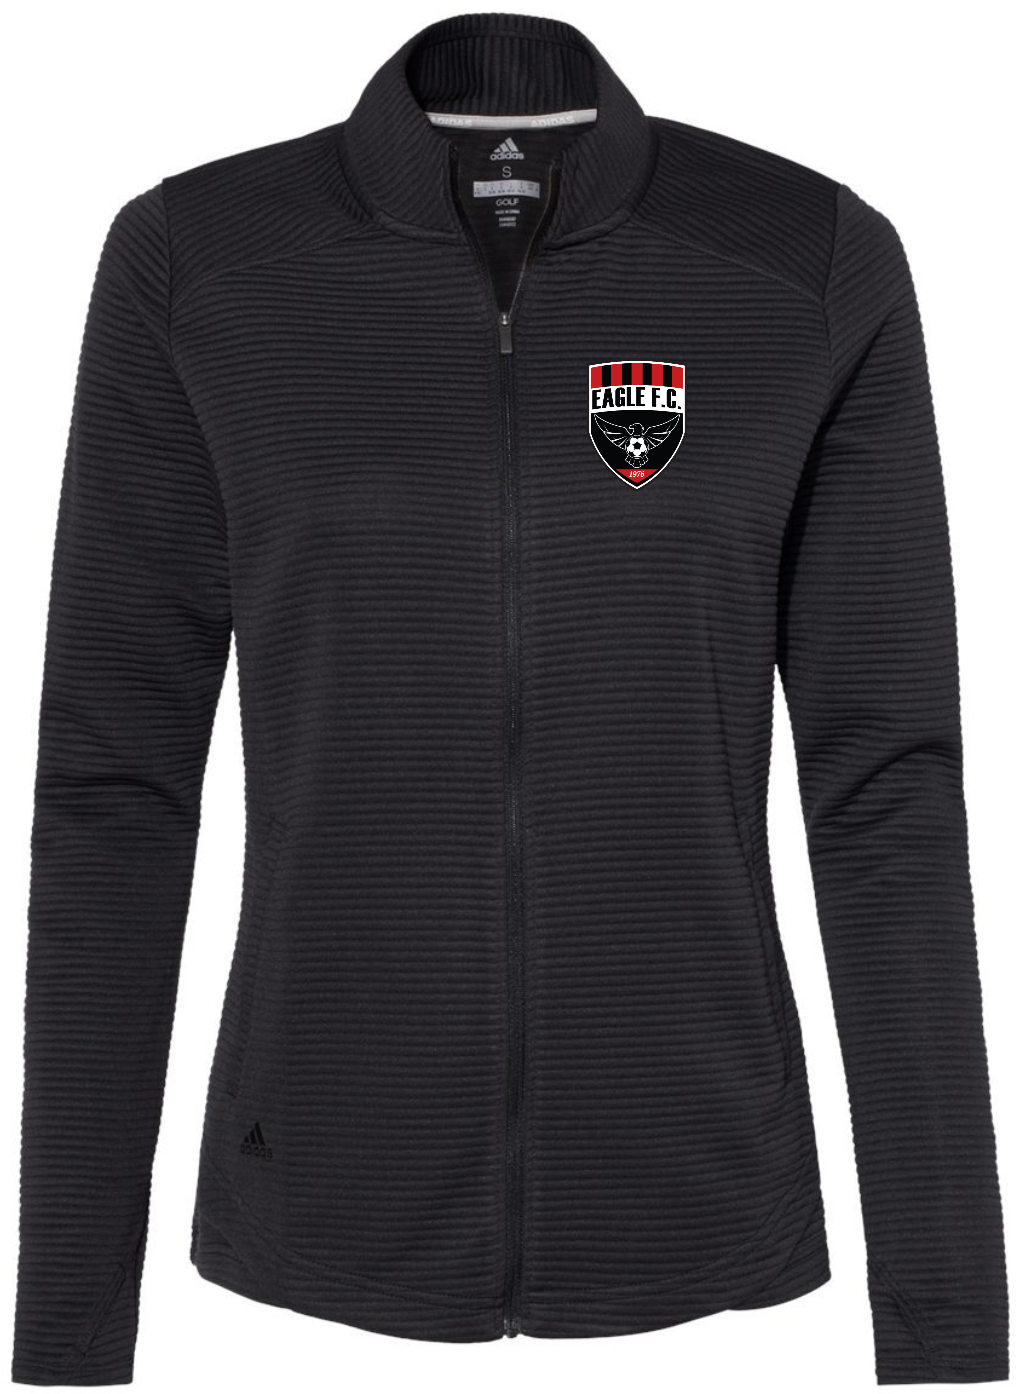 EagleFC Adidas Ladies Full-Zip Jacket